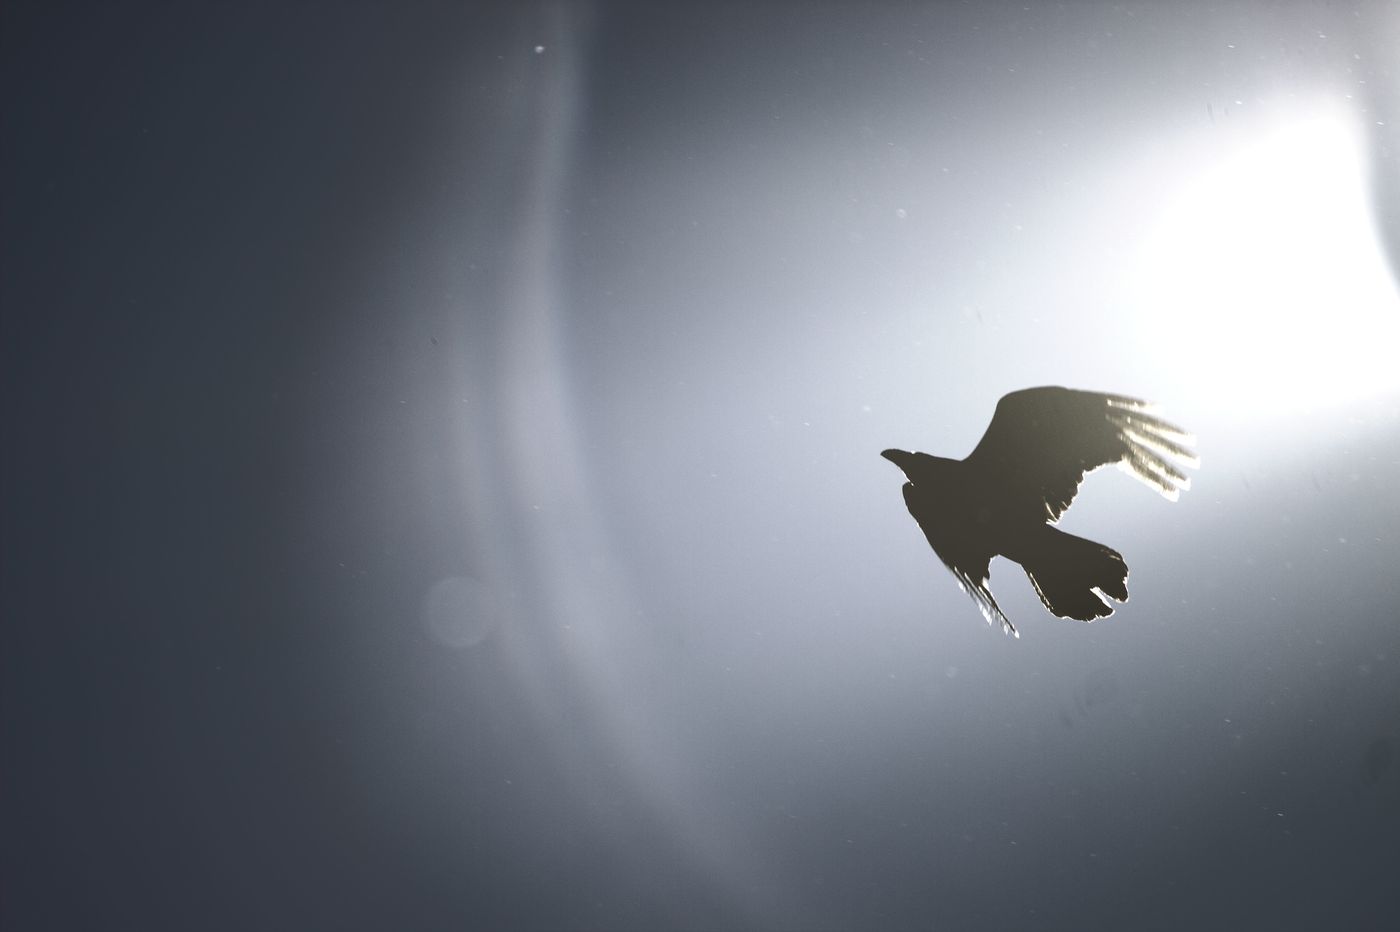 Raven in de lucht tegen de achtergrond van de zon